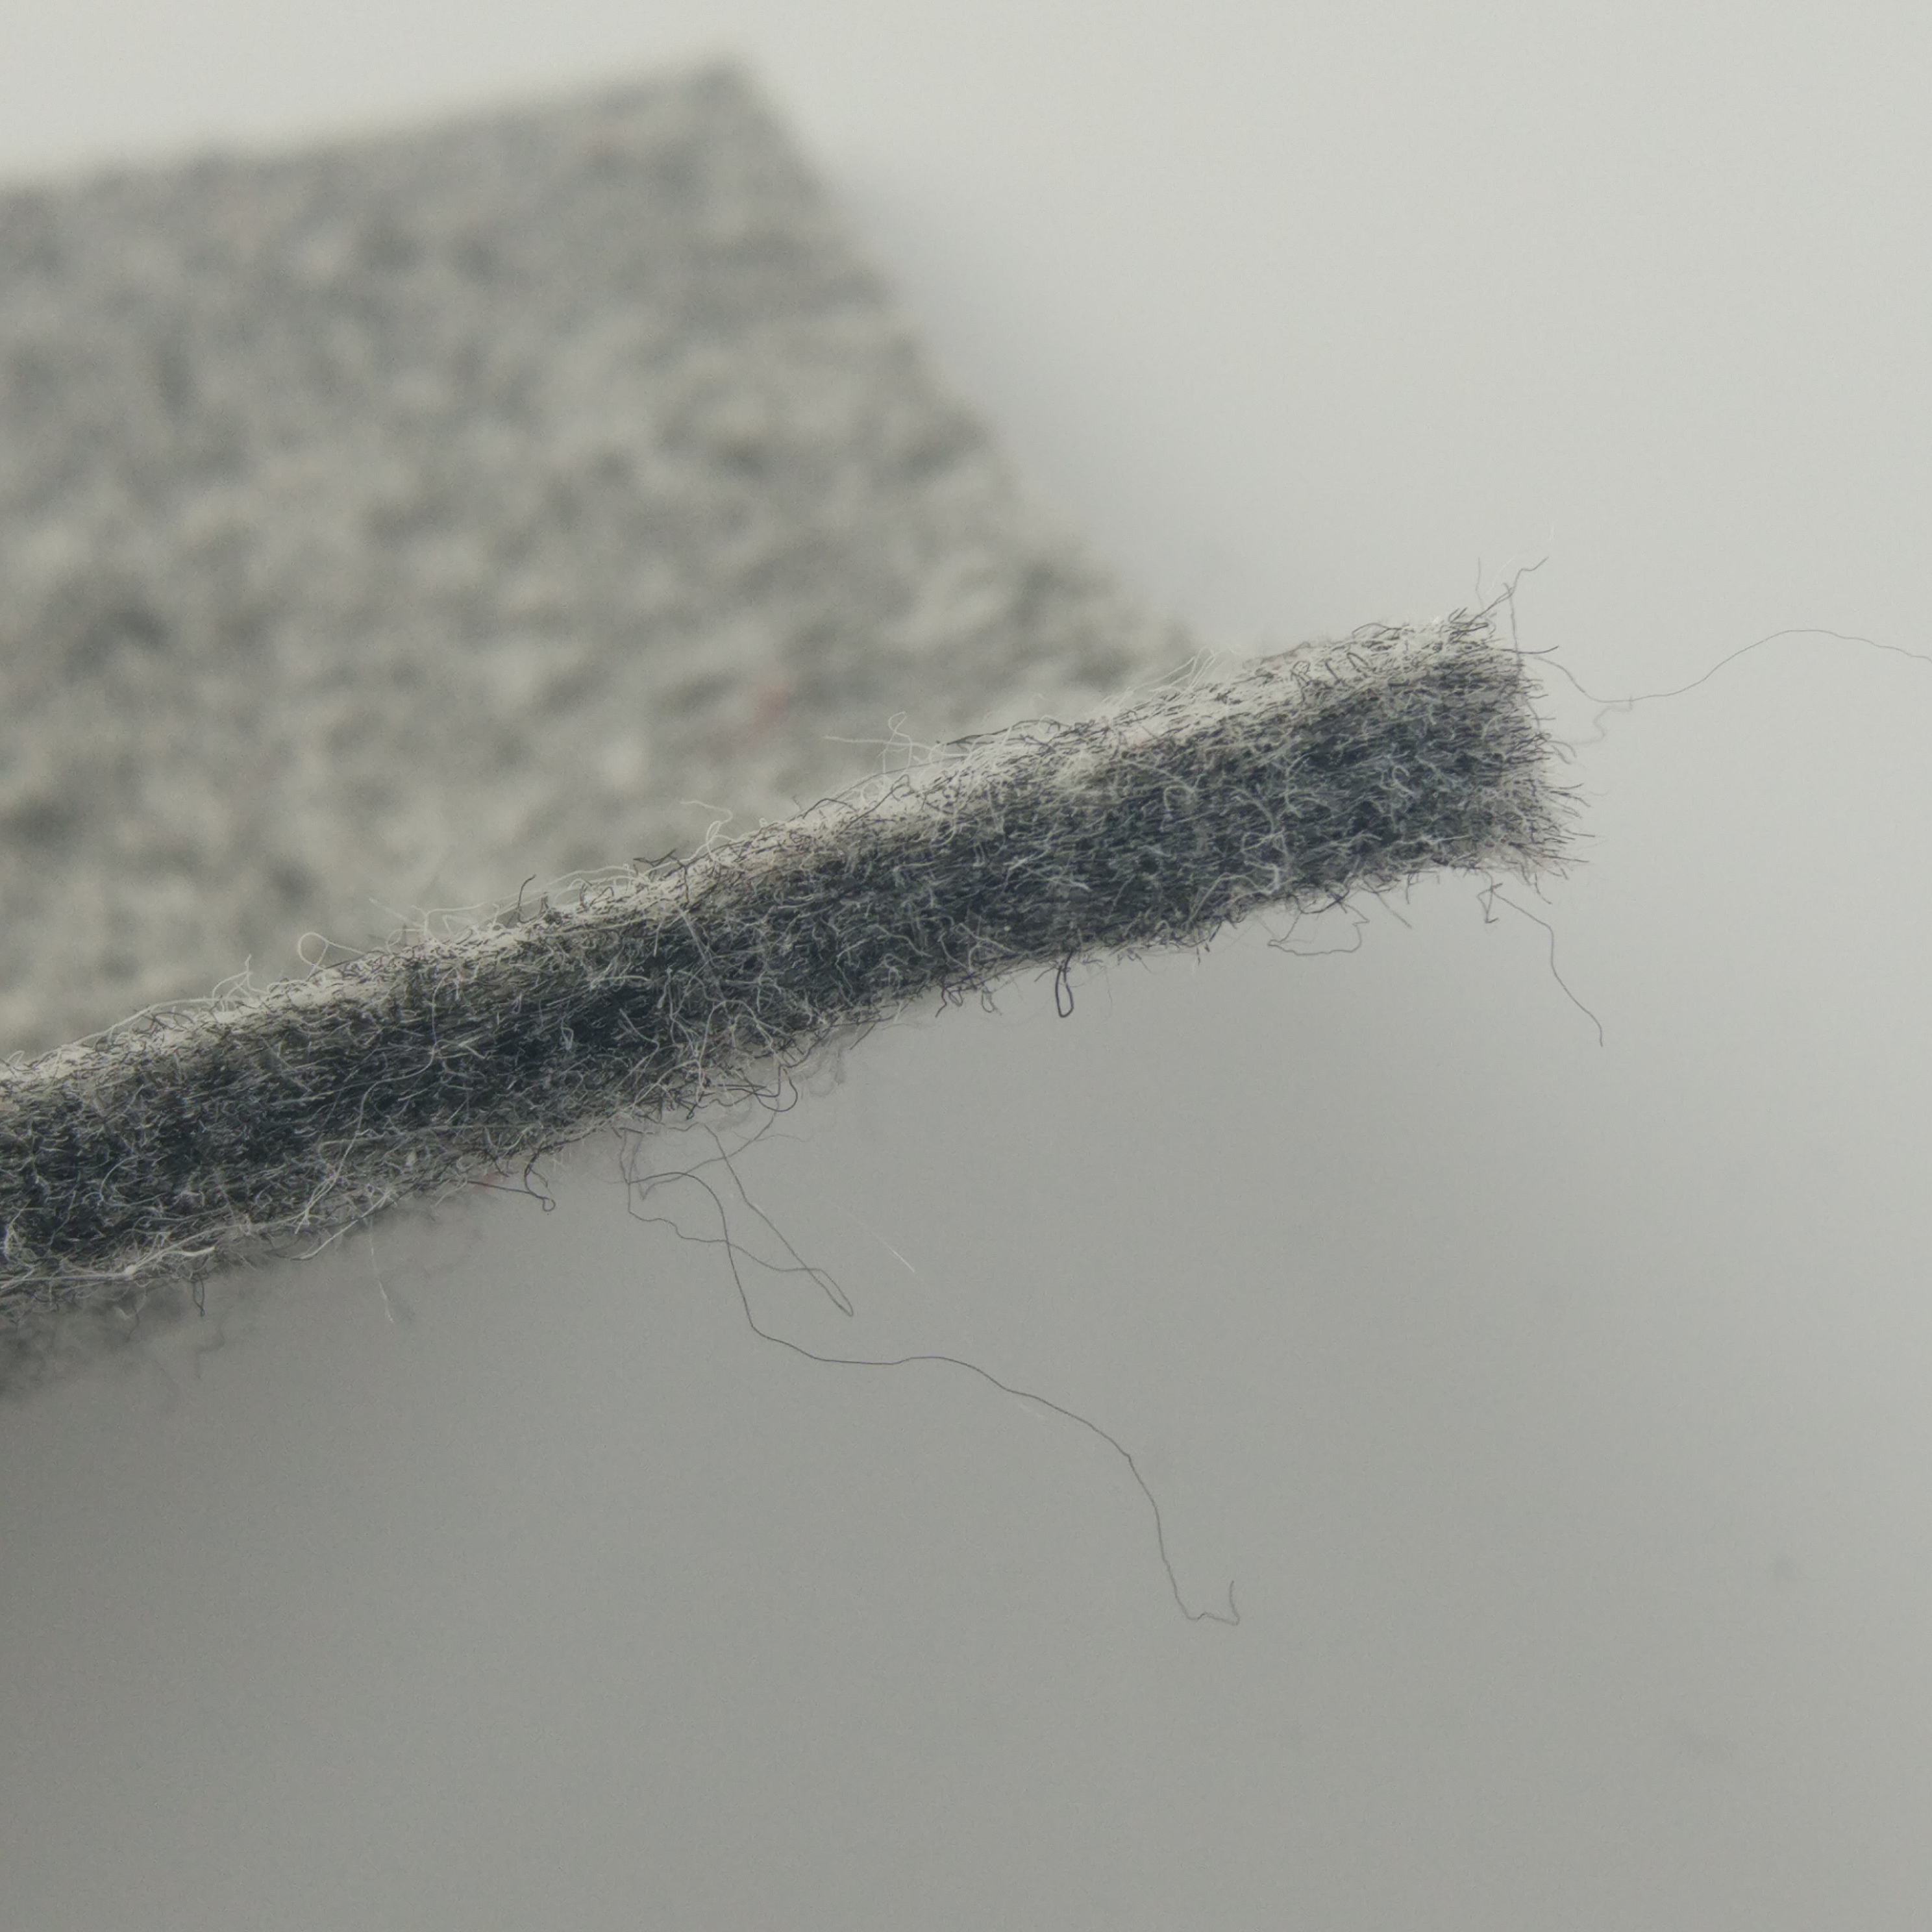 Alfombrilla antideslizante para alfombra con base de plástico